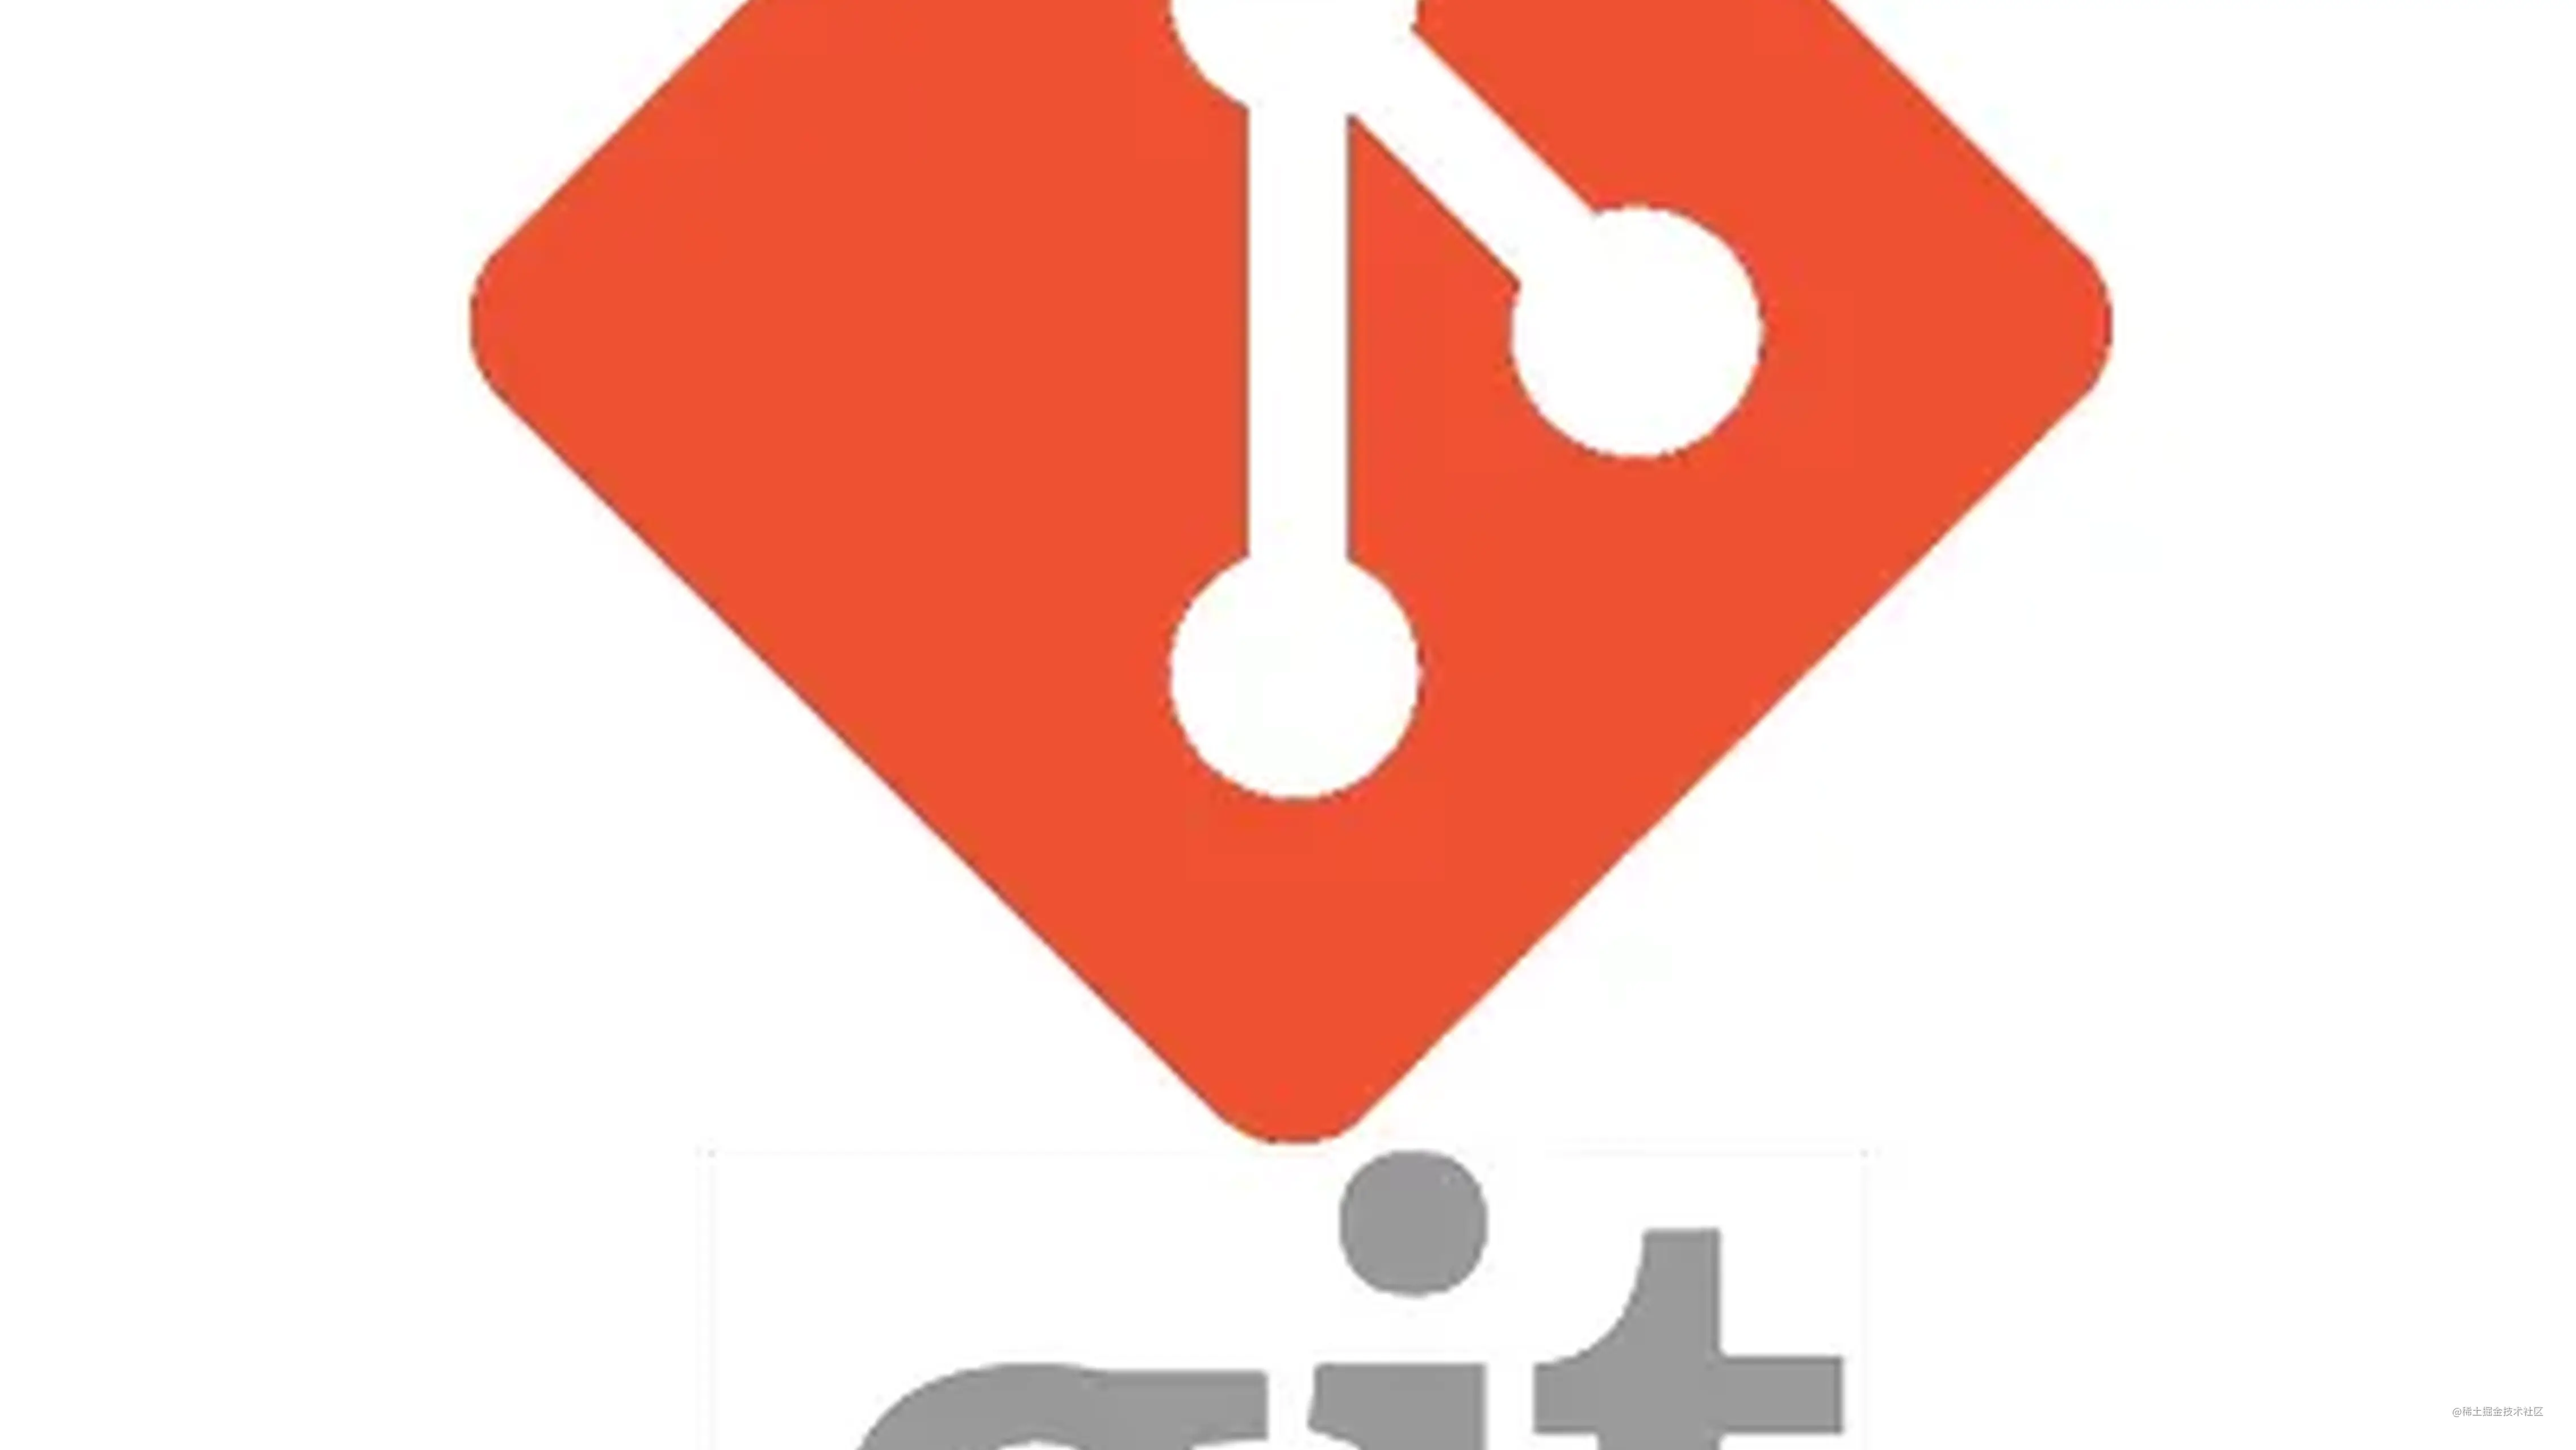 Git安装和配置